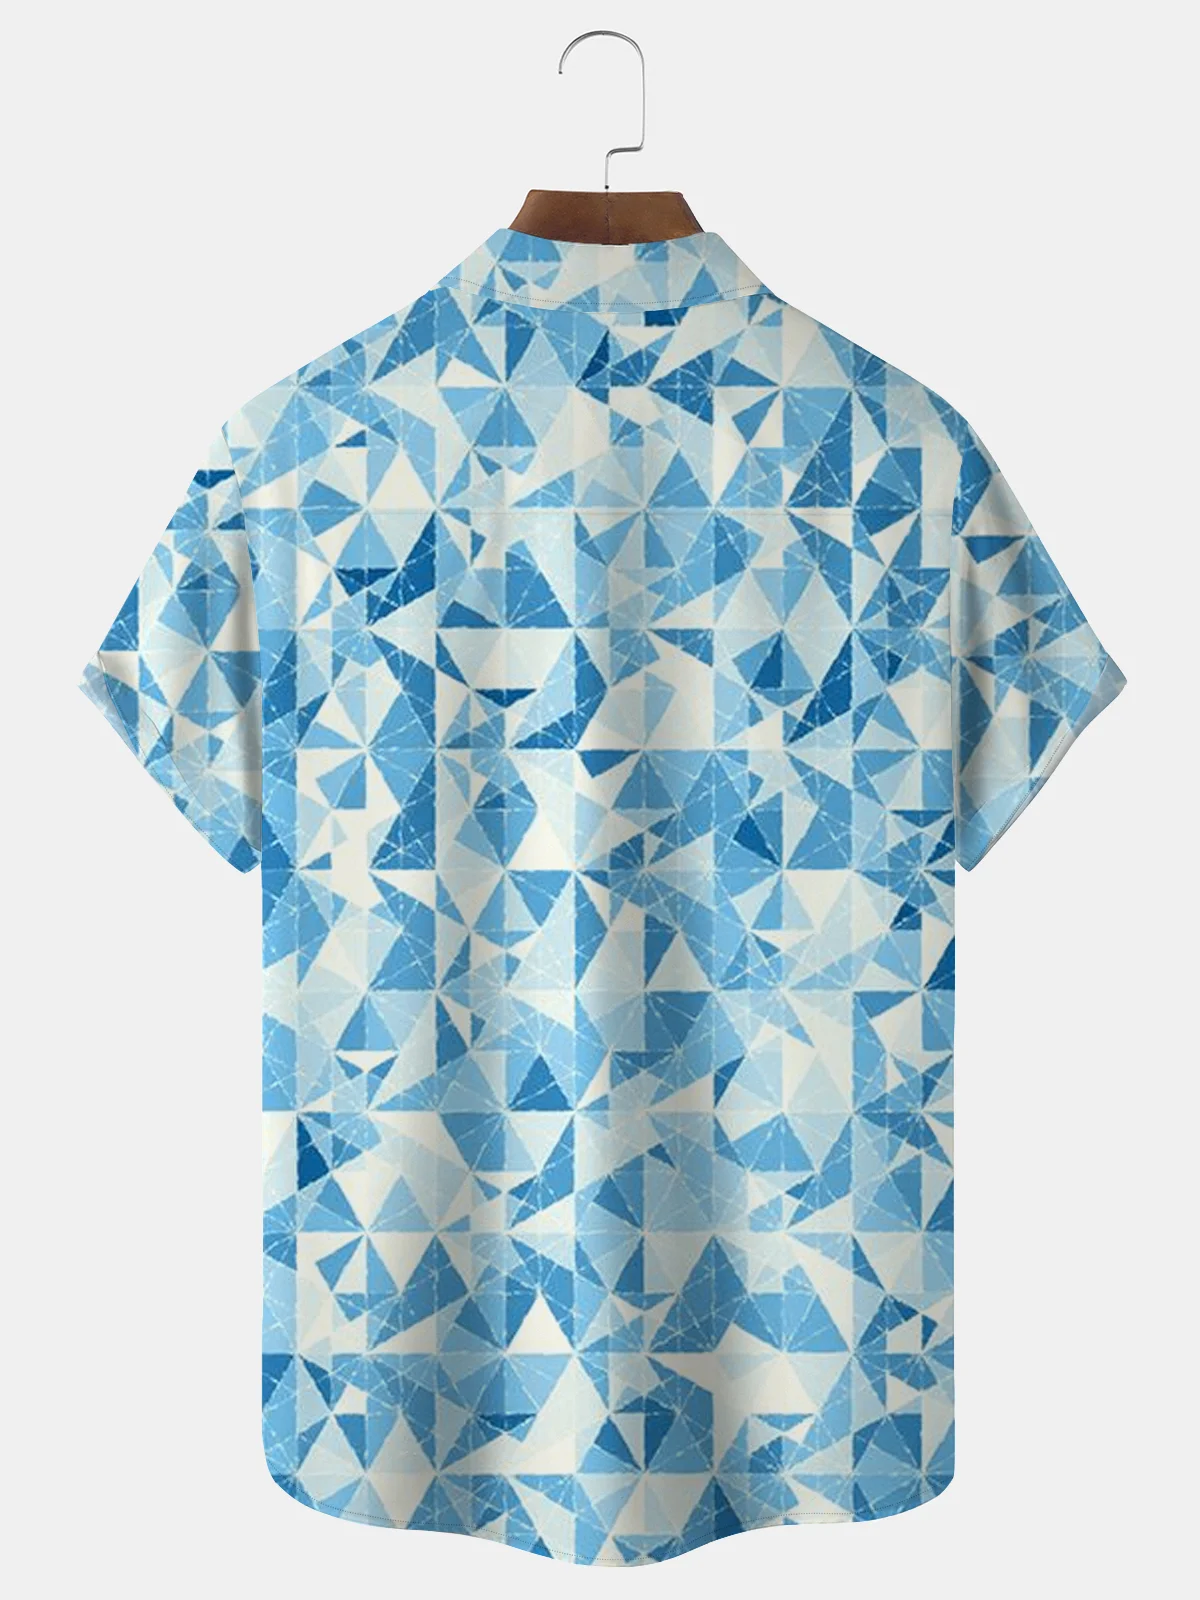 Royaura Casual Basics Geometry Print Beach Men's Hawaiian Oversized Shirt With Pocket